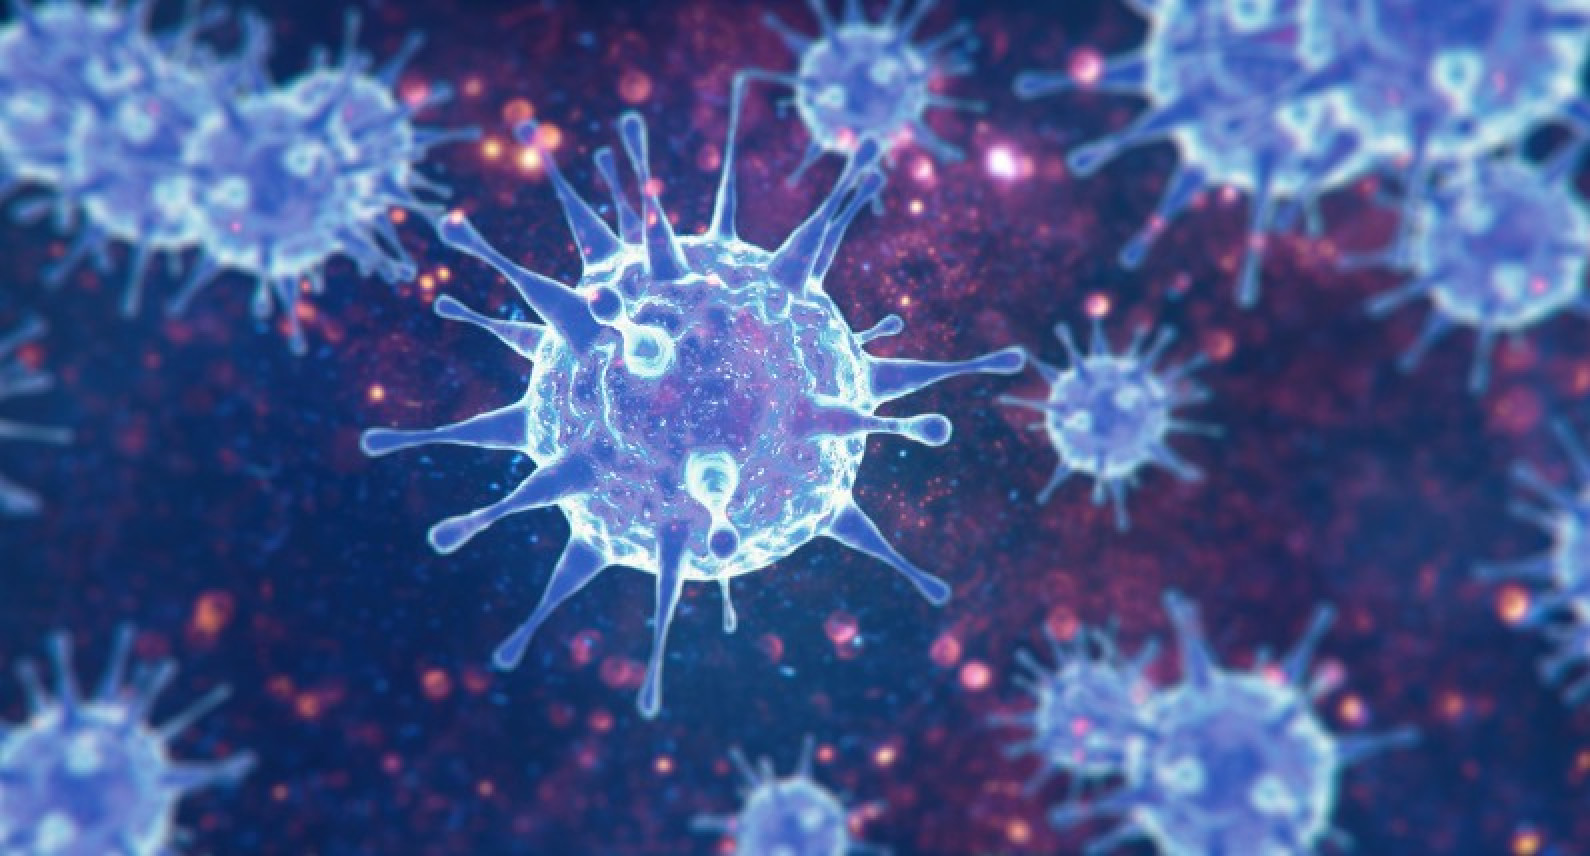 W Norwegii wykryto pierwsze przypadki mutacji koronawirusa. Zakażeni to uczestnicy wycieczki